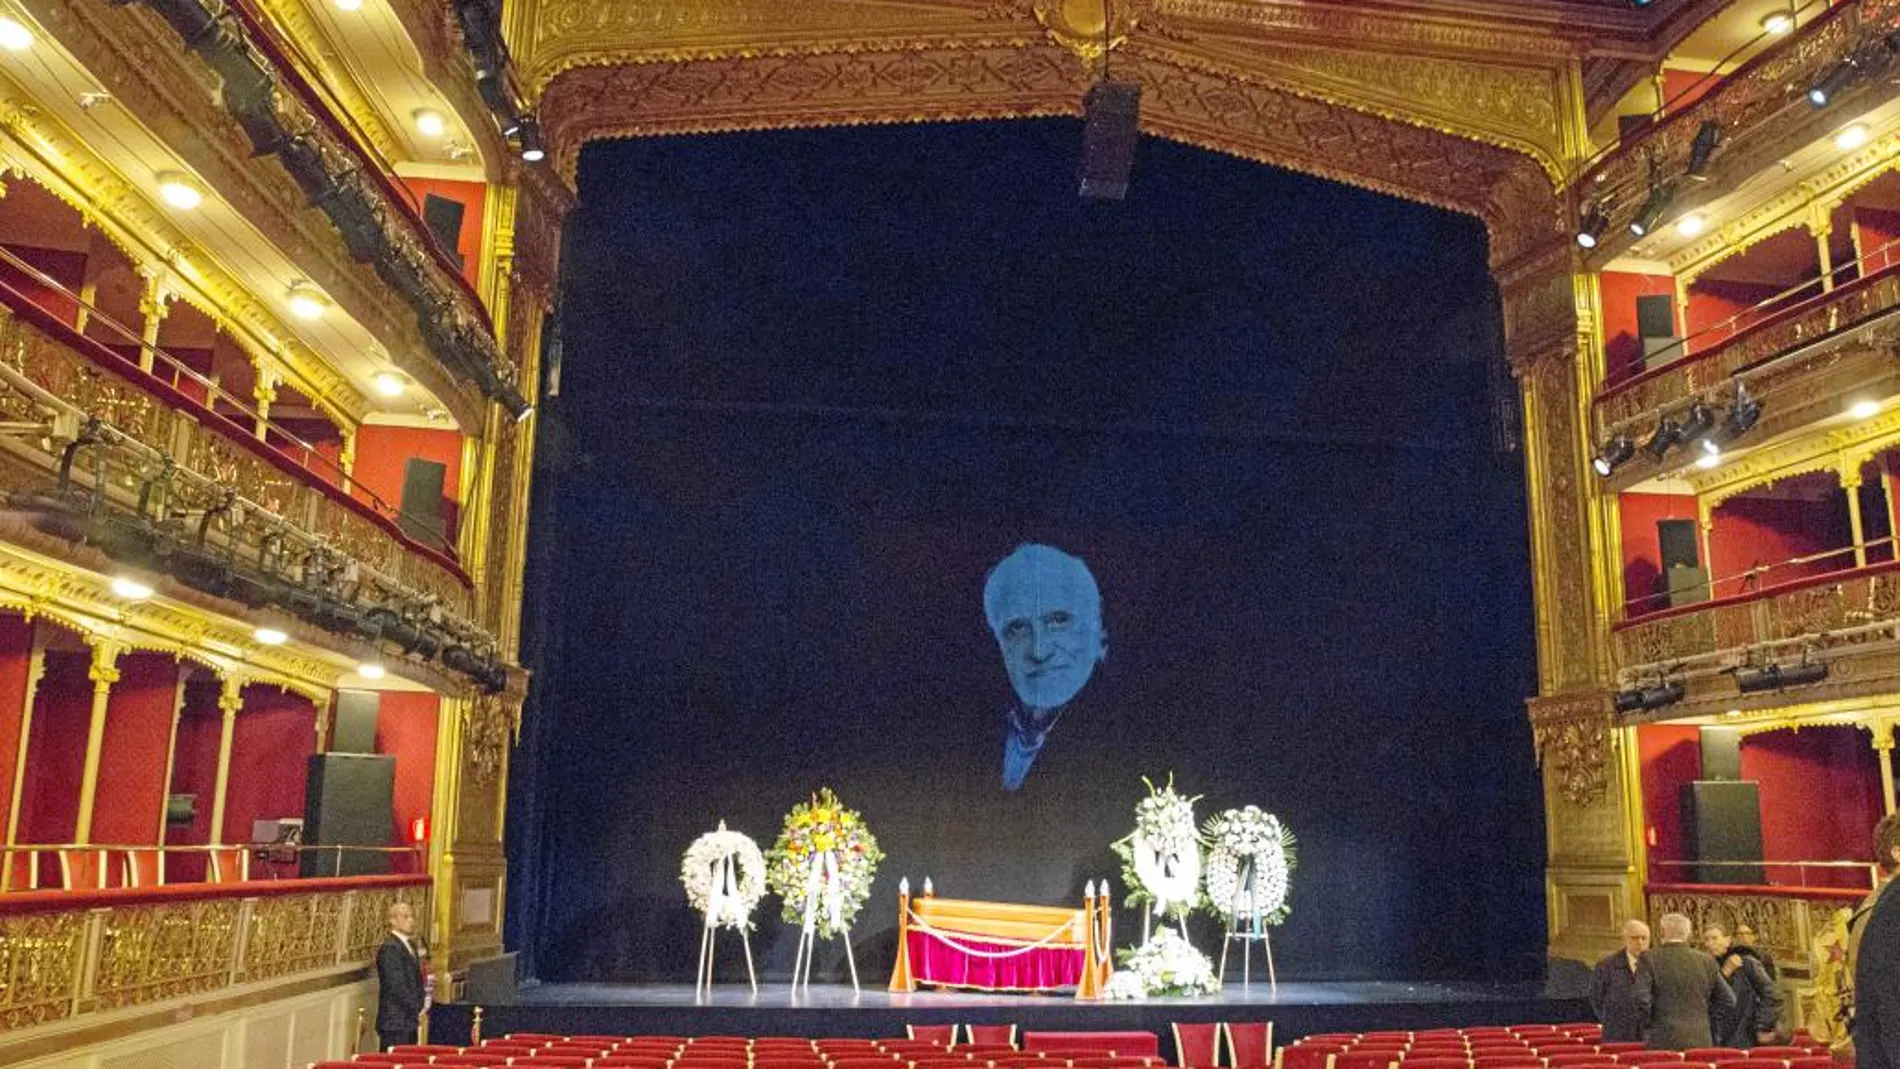 La capilla ardiente se instaló en el escenario del Teatro María Guerrero, donde se proyectó una imagen del artista